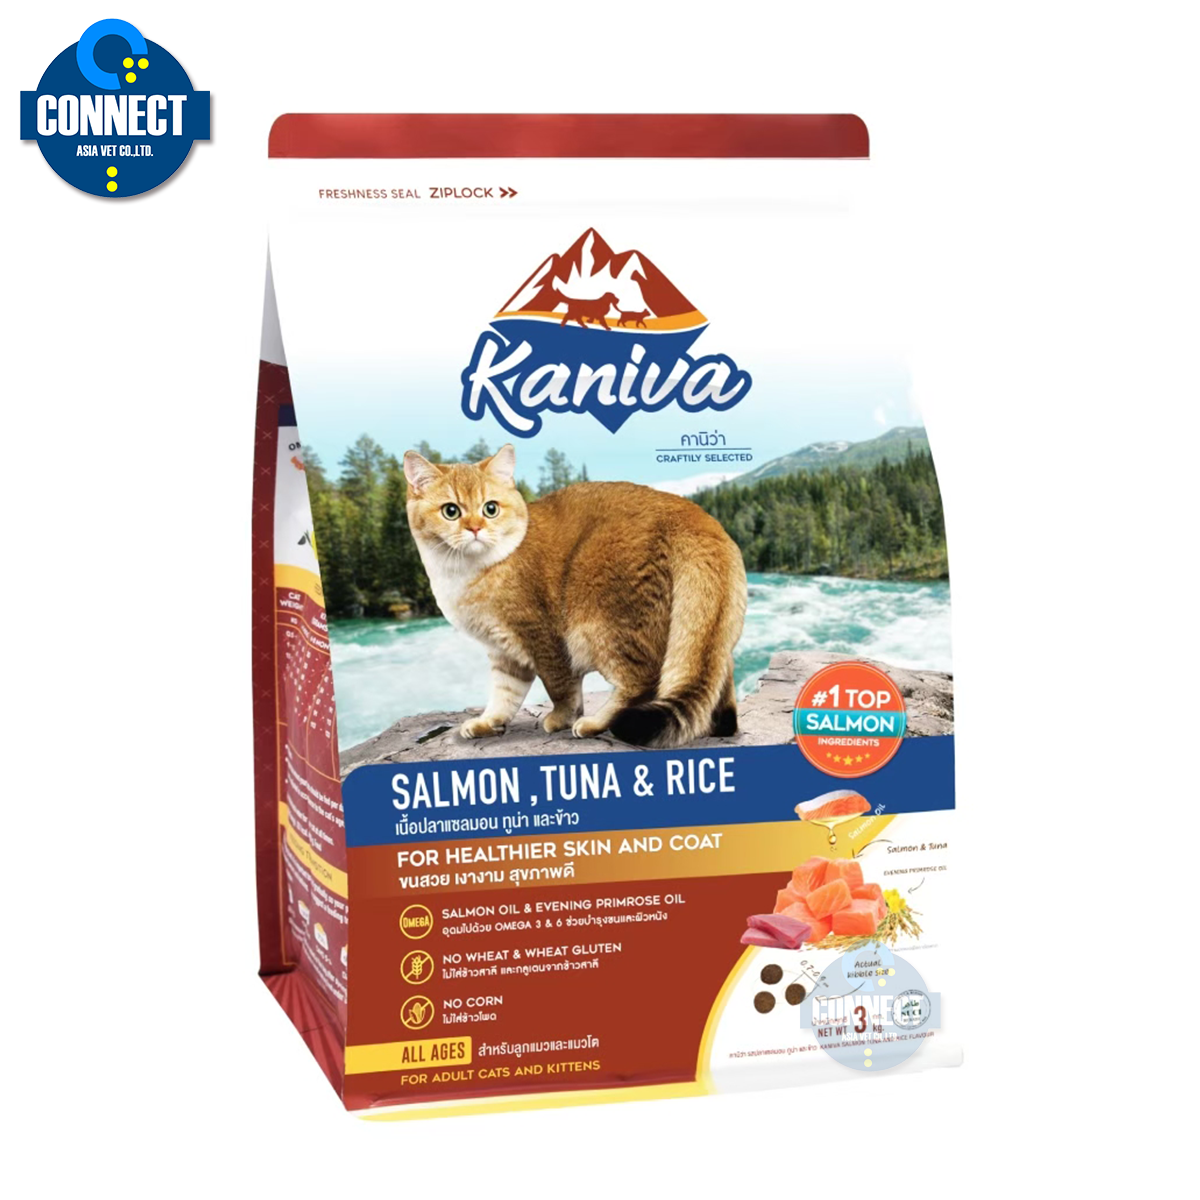 Kaniva(คานิว่า) อาหารเม็ดแมว สูตรเนื้อปลาแซลมอน ทูน่าและข้าว ขนาดถุง  (380 กรัม , 1.4 กิโลกรัม , 3 กิโลกรัม)